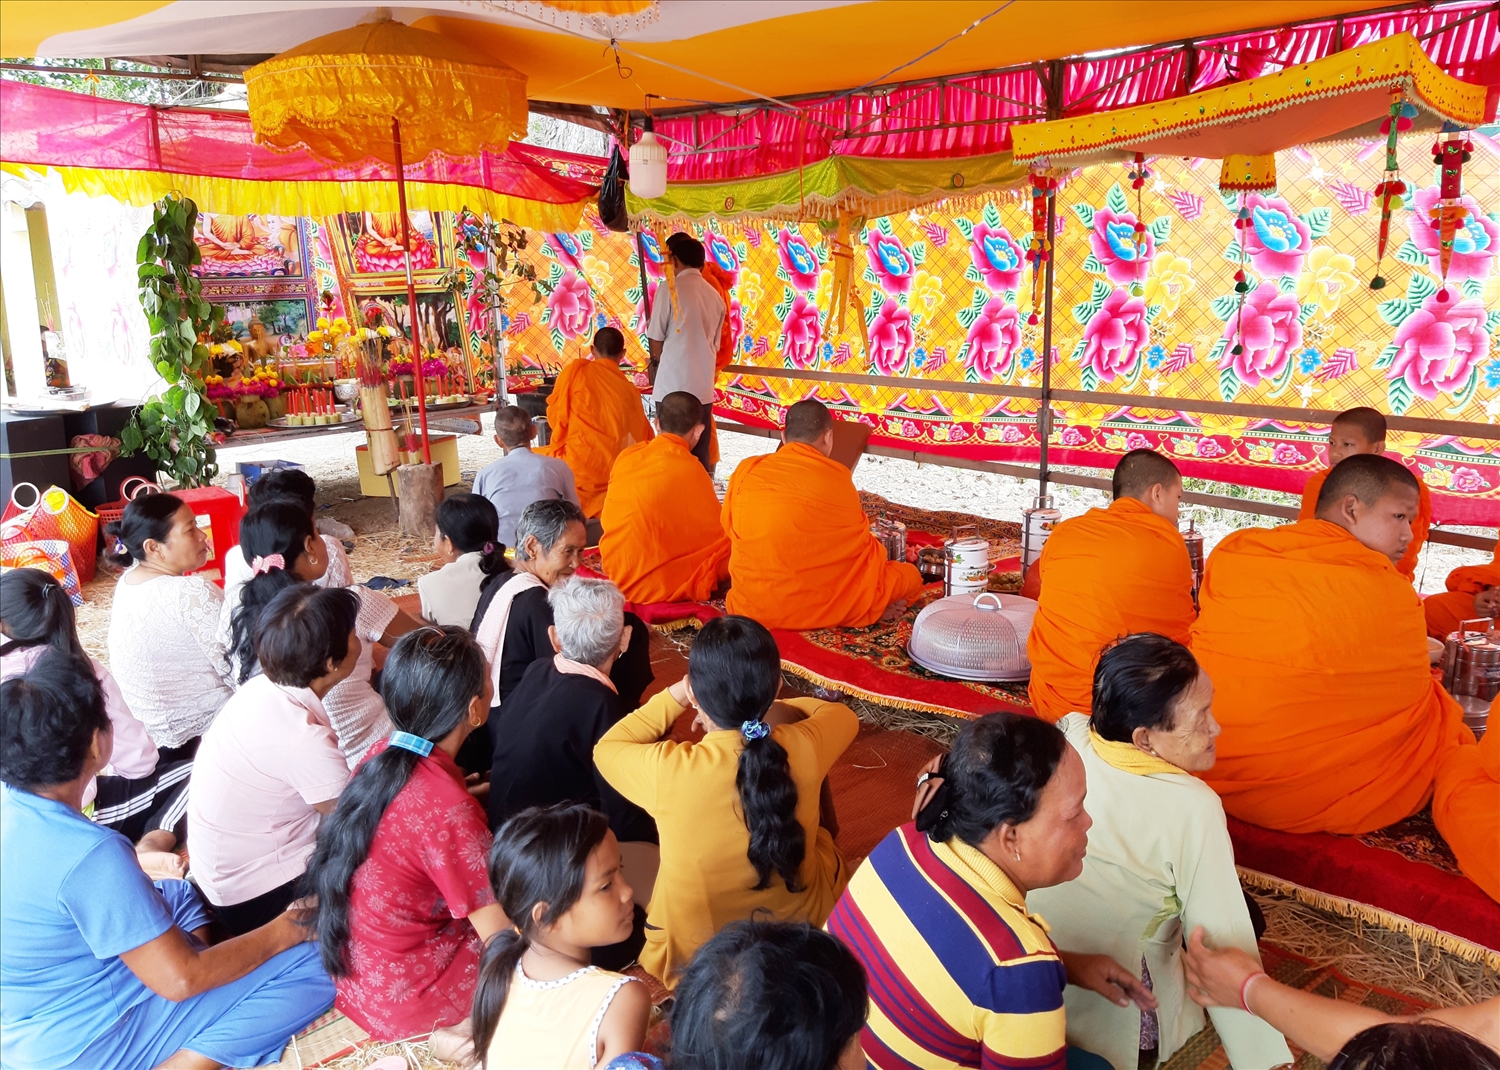 Hằng năm, đồng bào Khmer trong phum sóc mang lễ vật tổ chức cúng tế Neak Tà tại Thala của phum sóc. (Ảnh chụp trước ngày 27/4/2021)